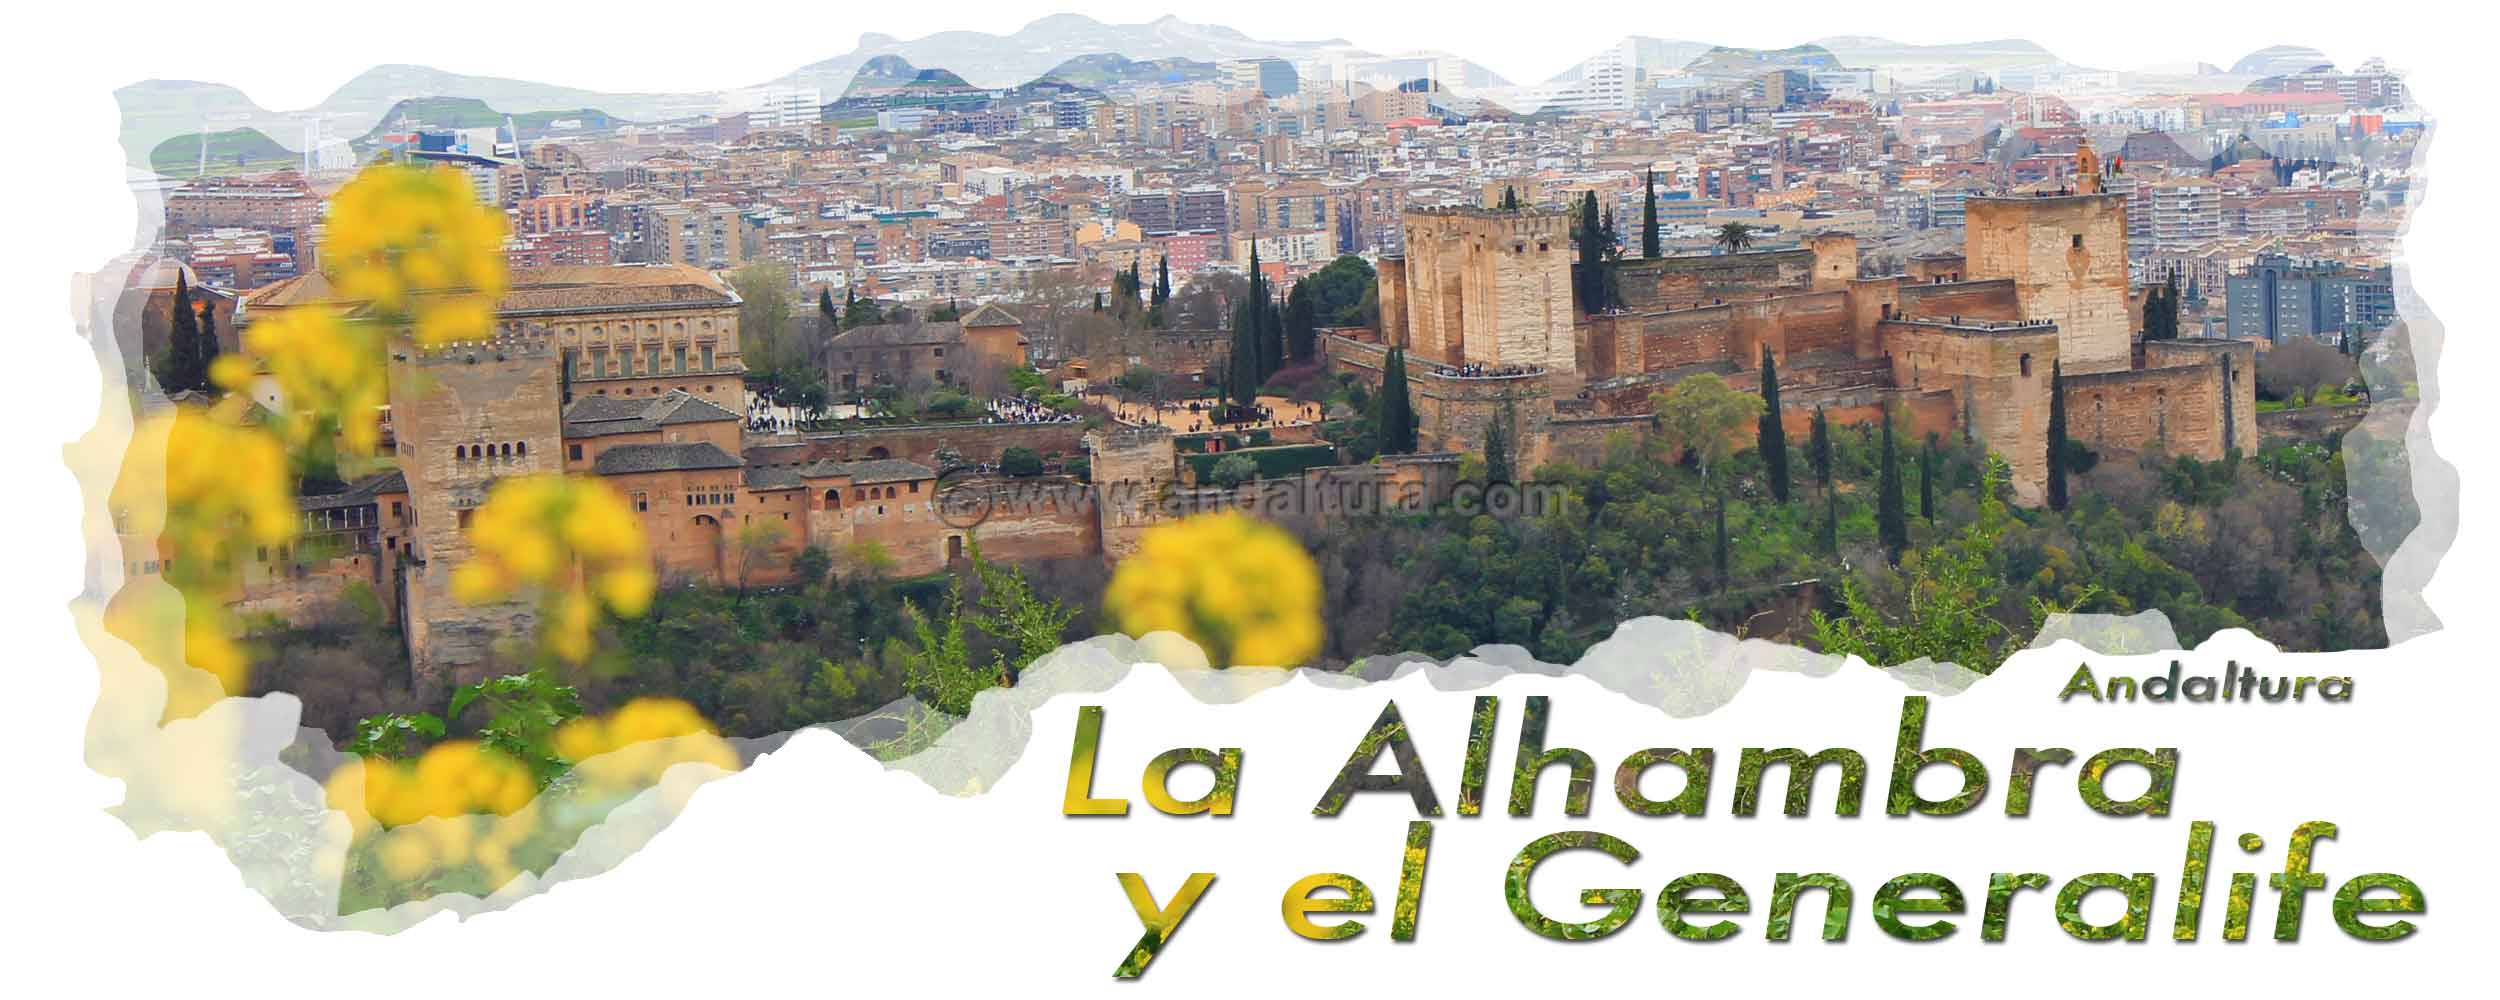 Cabecera accesos a la alhambra en vehículo - Vista de la Alhambra desde San Miguel Alto